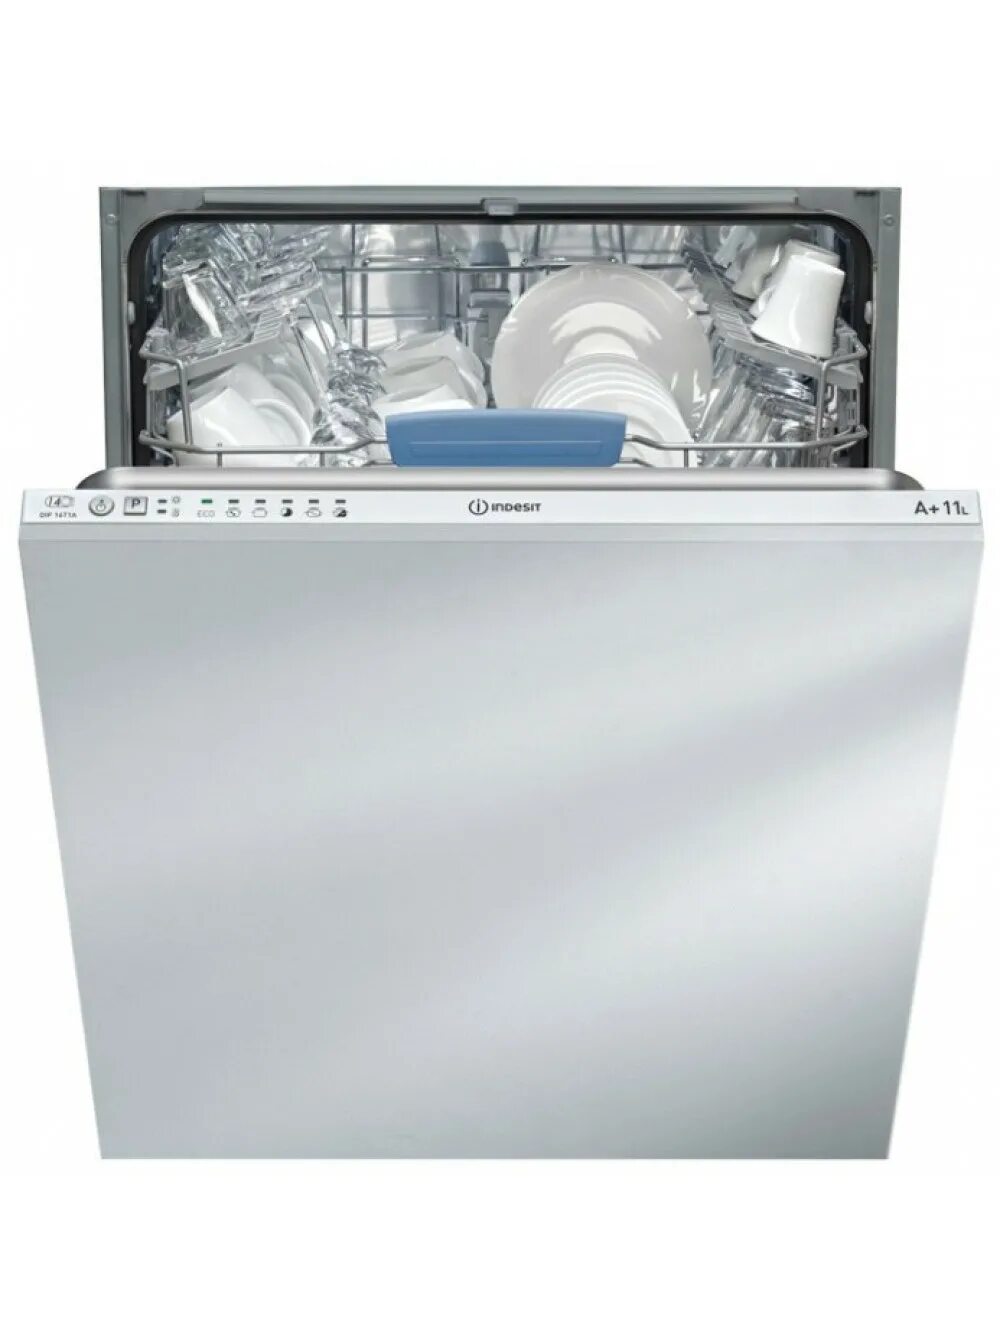 Купить посудомоечную машину отзывы. Посудомоечная машина Indesit DIF 04b1. Посудомоечная машина Indesit DIFP 18t1 CA. Посудомоечная машина Indesit DIF 14. Посудомоечная машина Индезит 60 см встраиваемая.